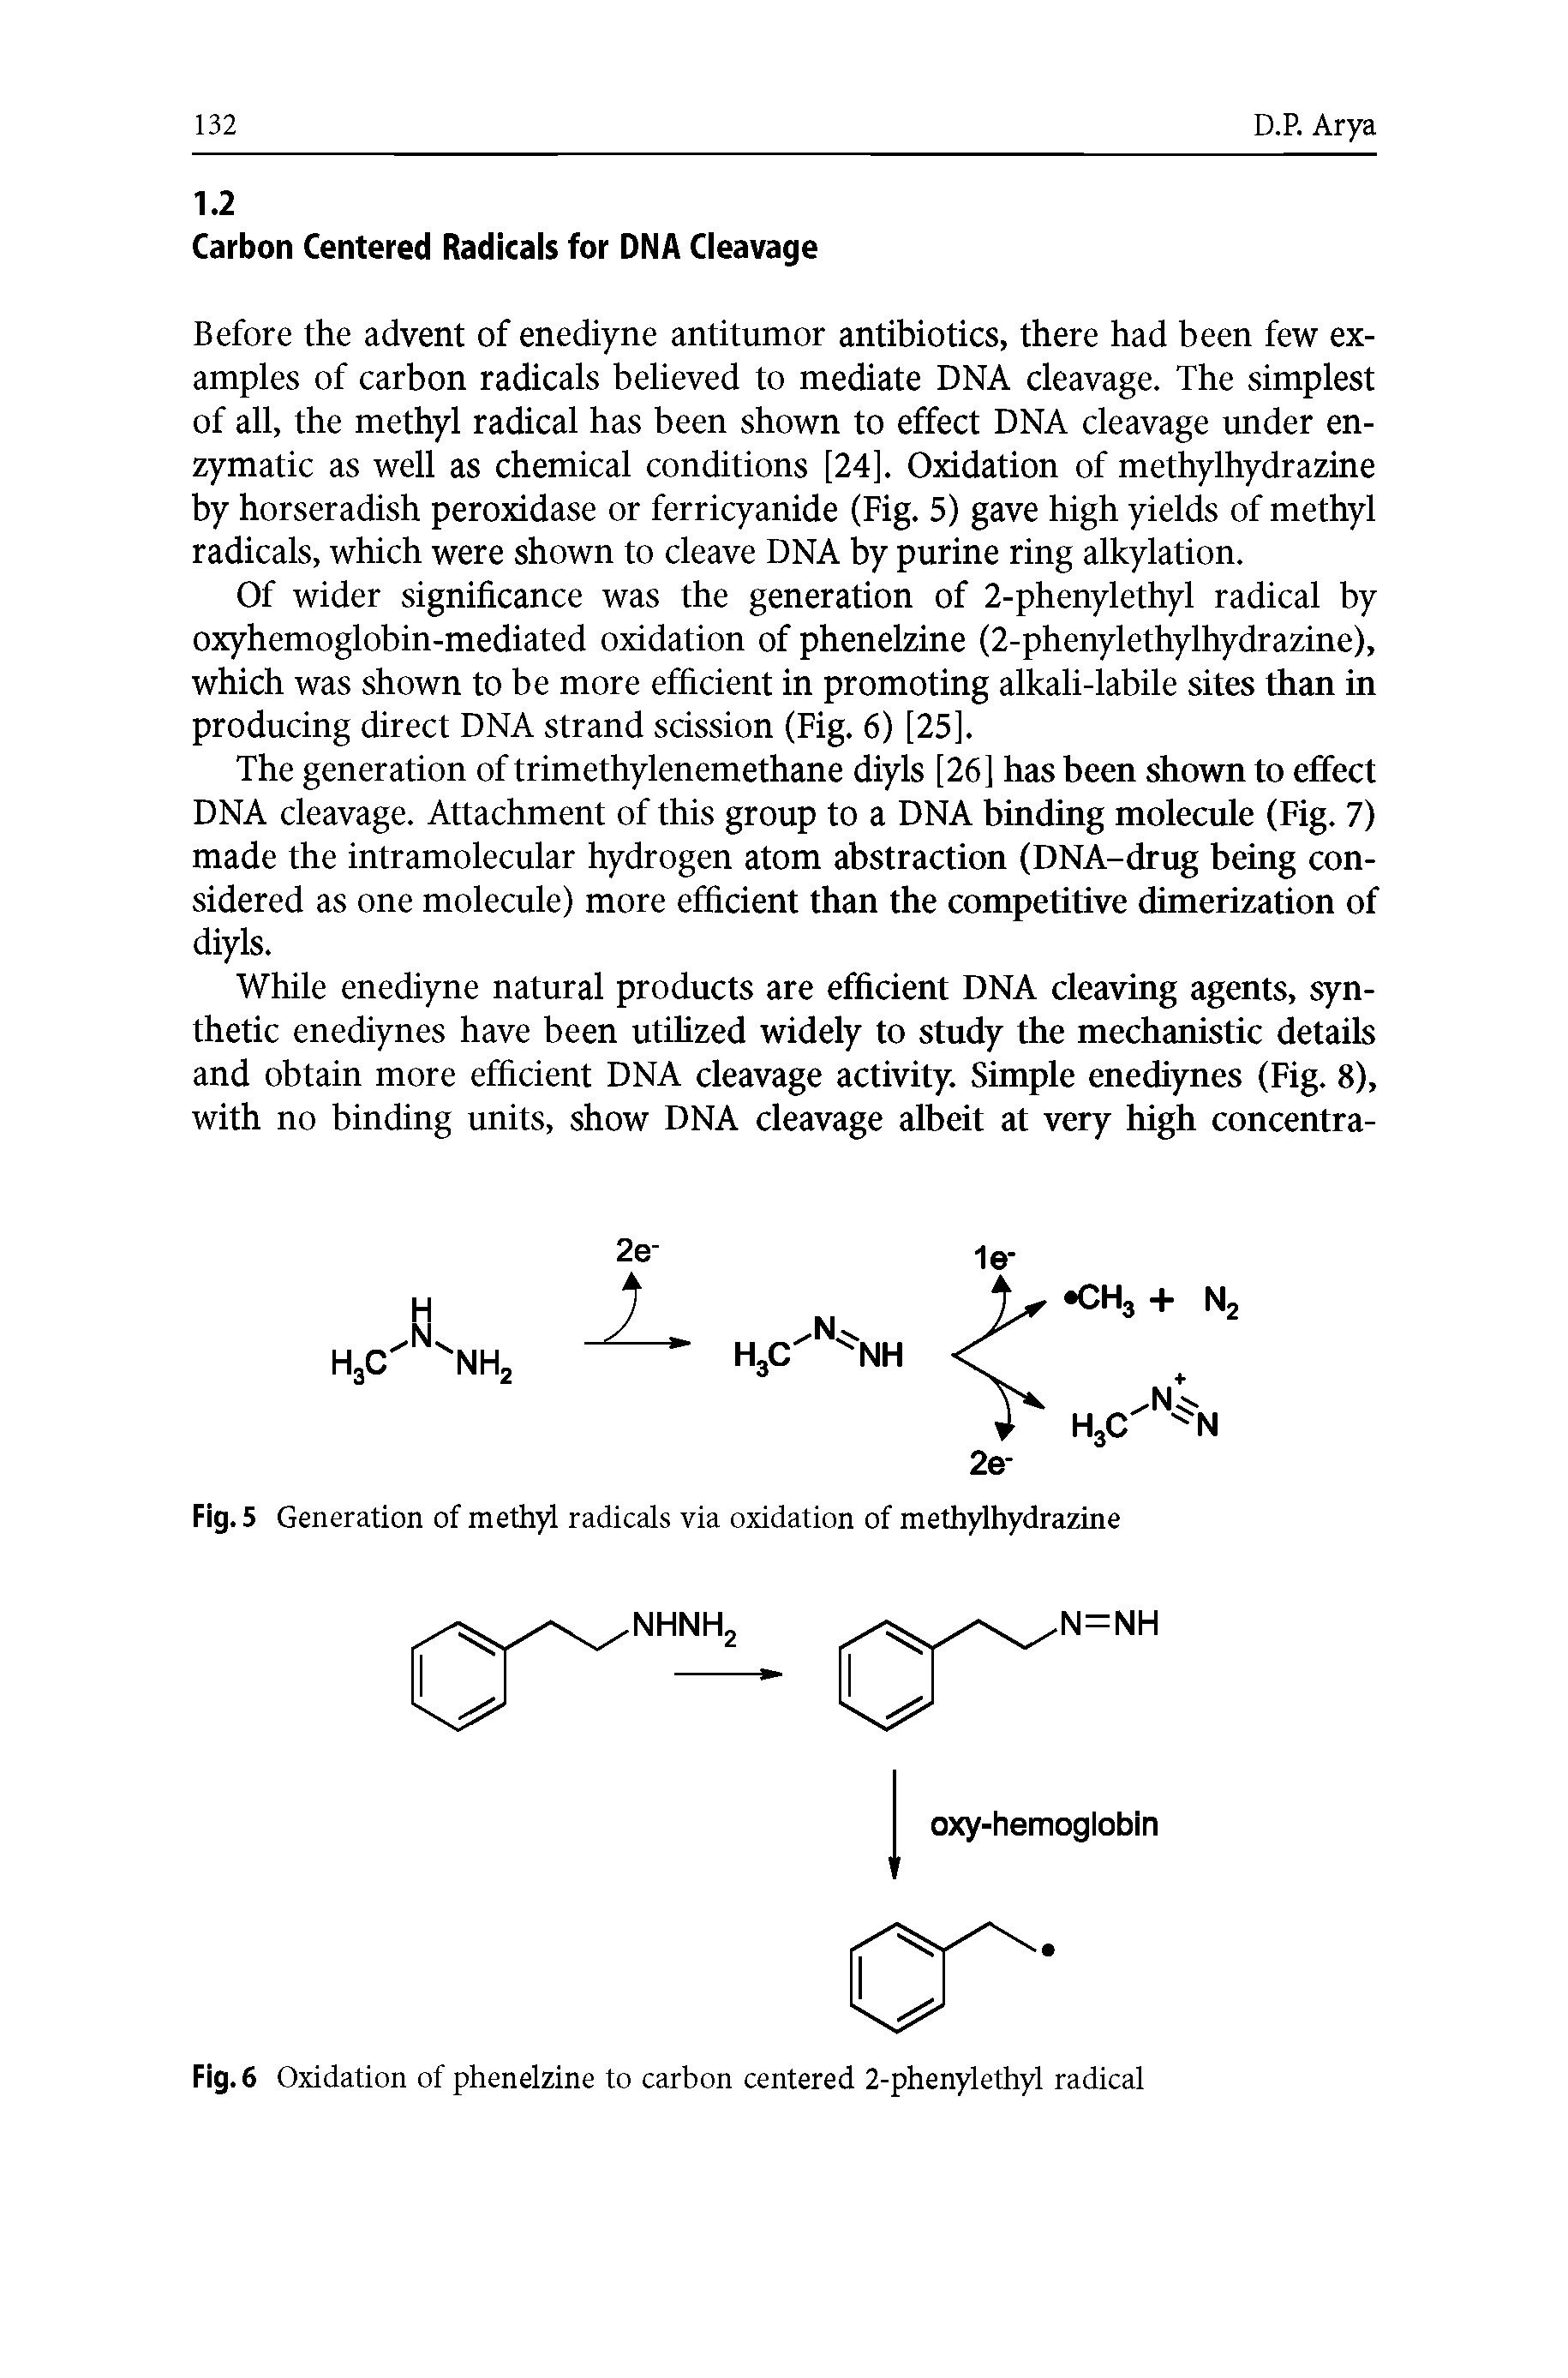 Fig. 6 Oxidation of phenelzine to carbon centered 2-phenylethyl radical...